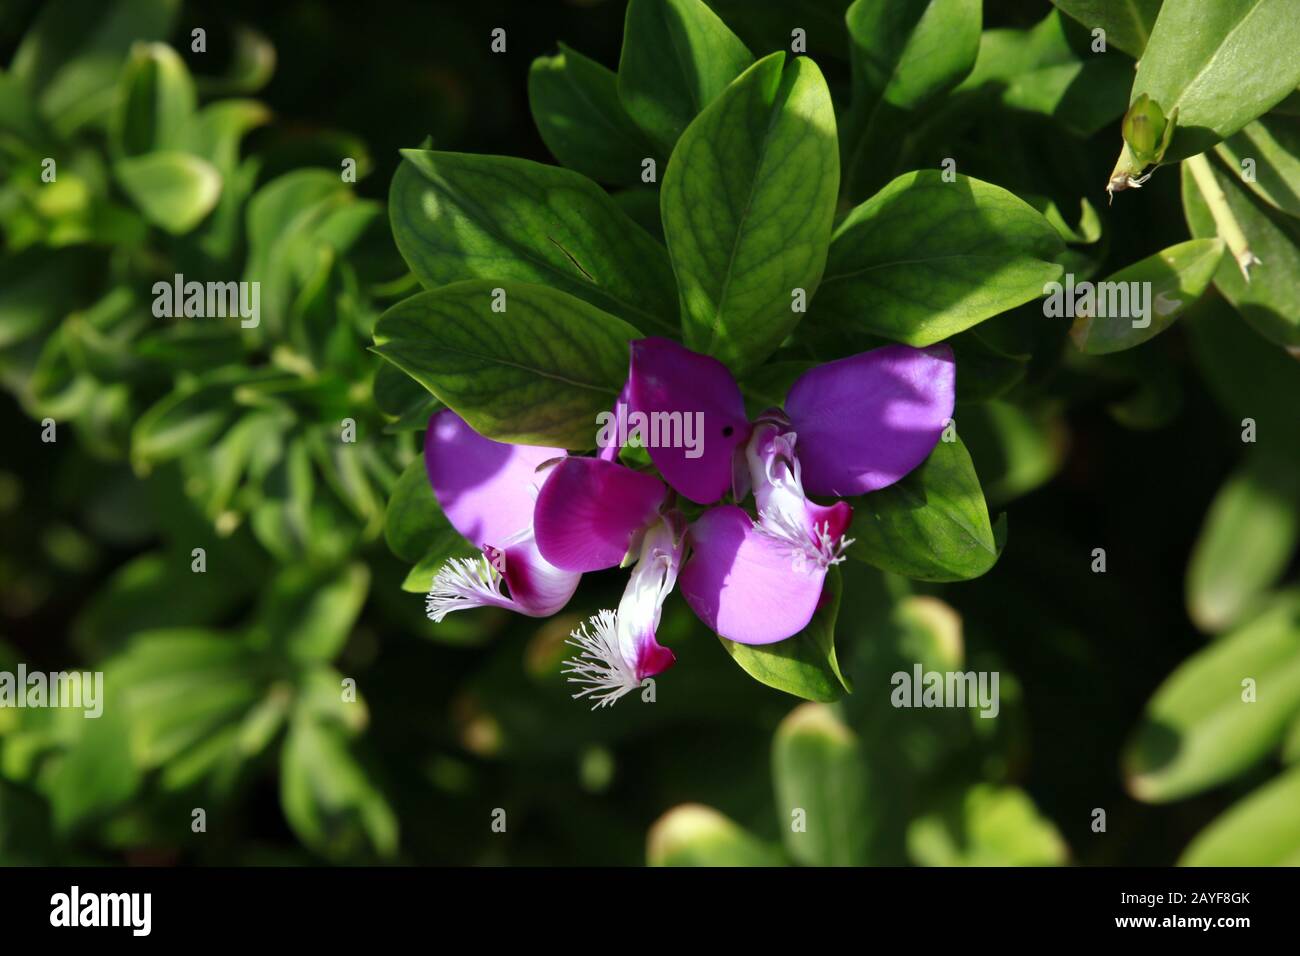 Myrtle finial (Polygala myrtifolia) - shrub with purple flowers Stock Photo